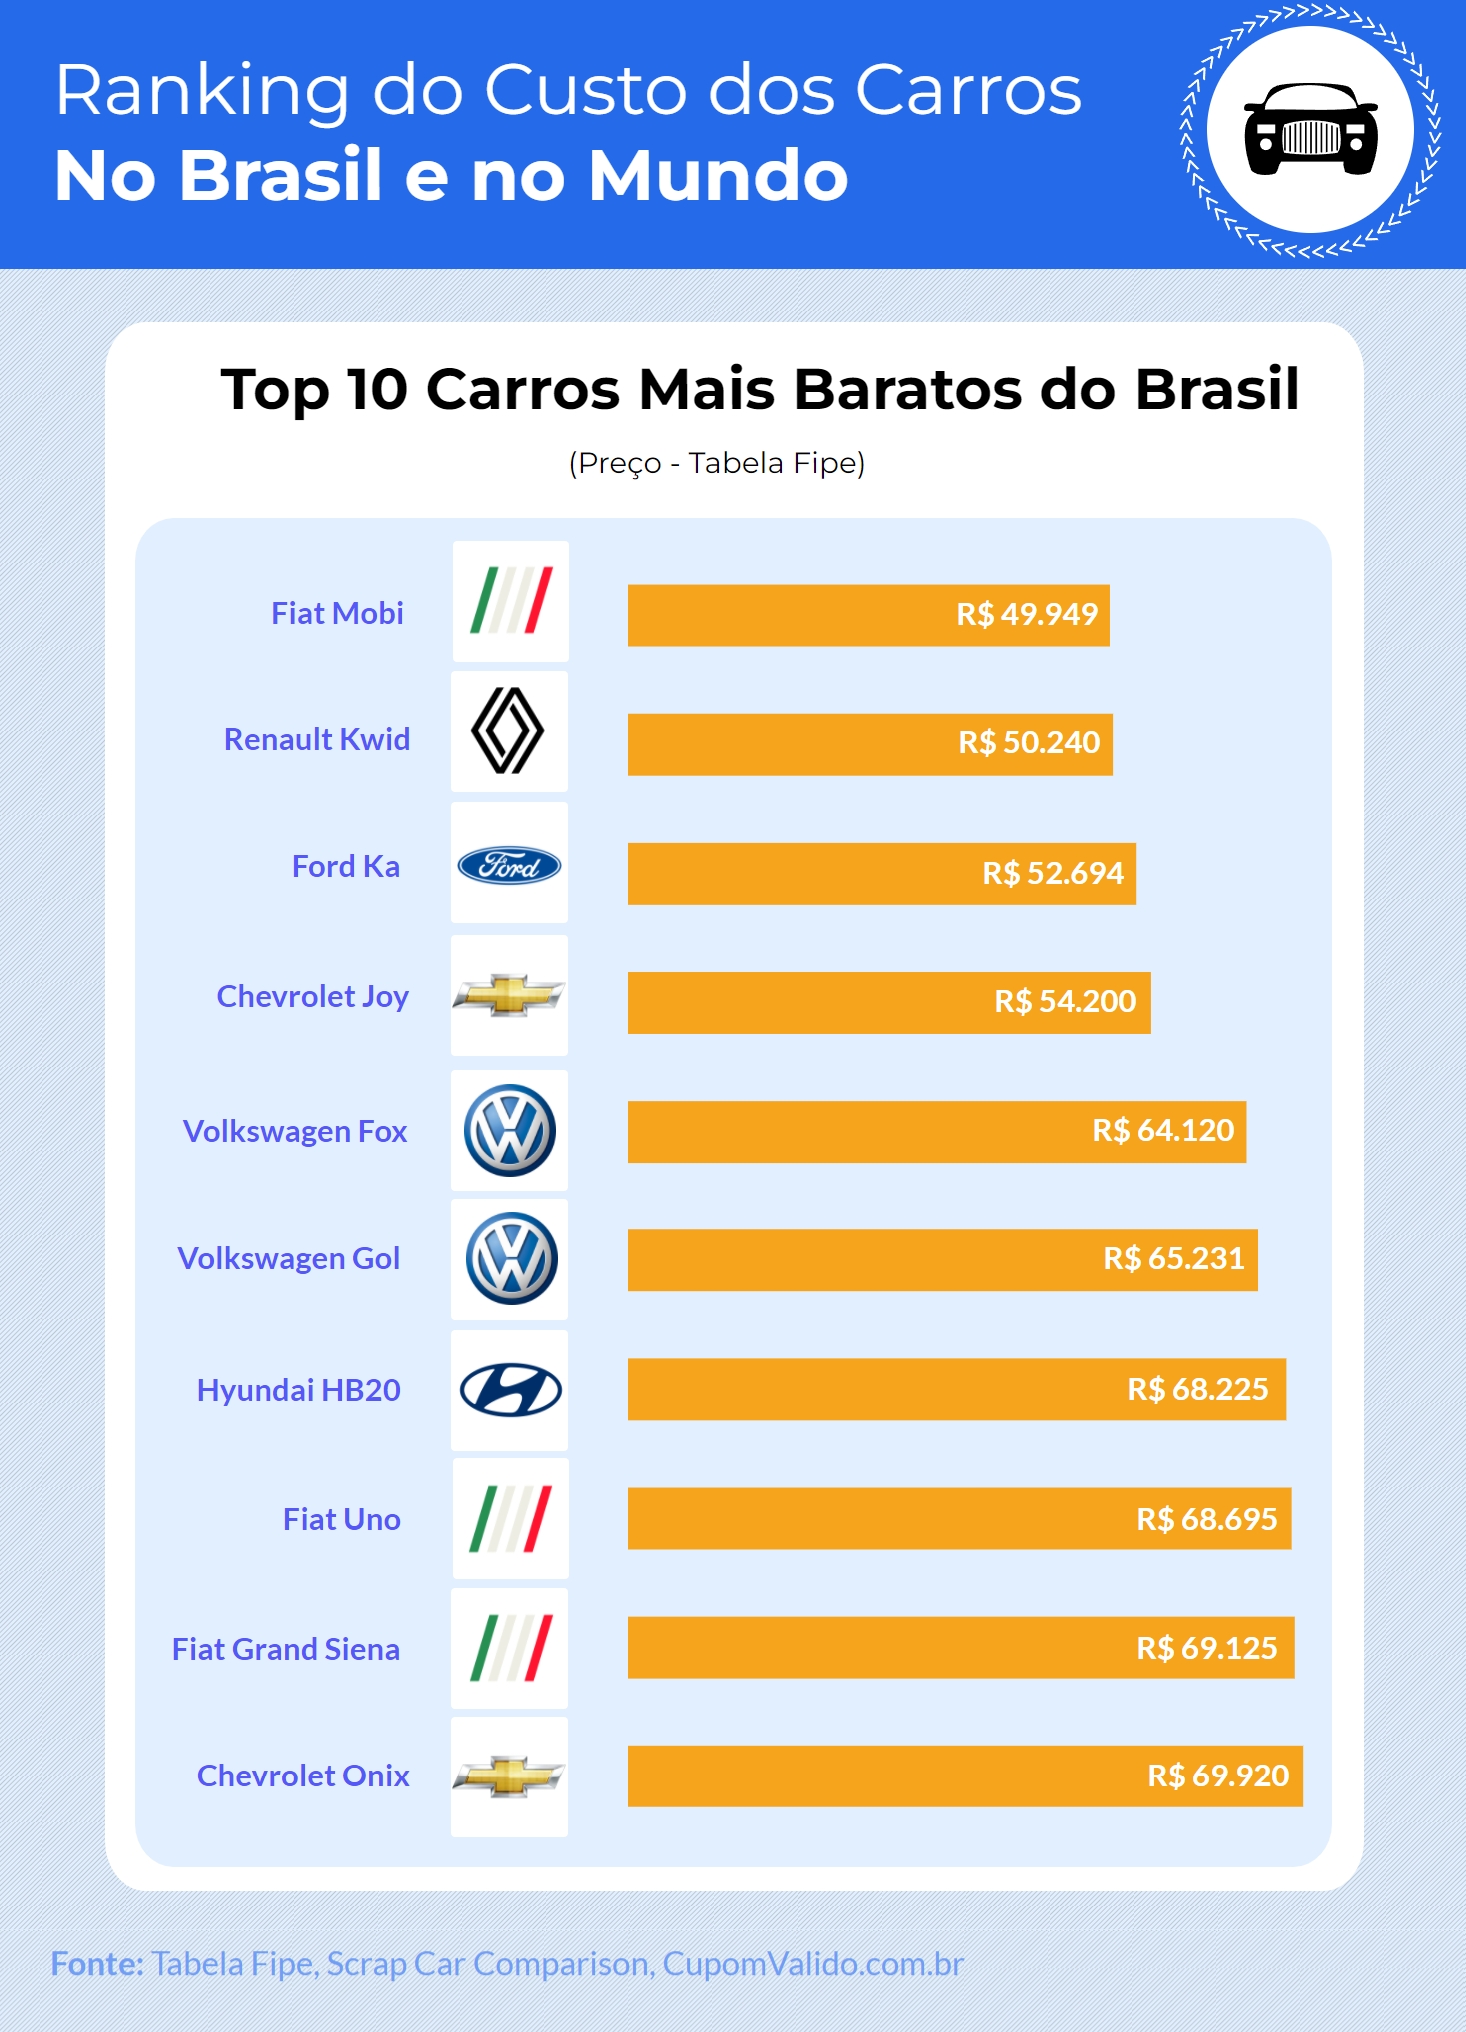 Brasil é o 5º país mais caro do mundo para se manter um carro - Revista  Cobertura